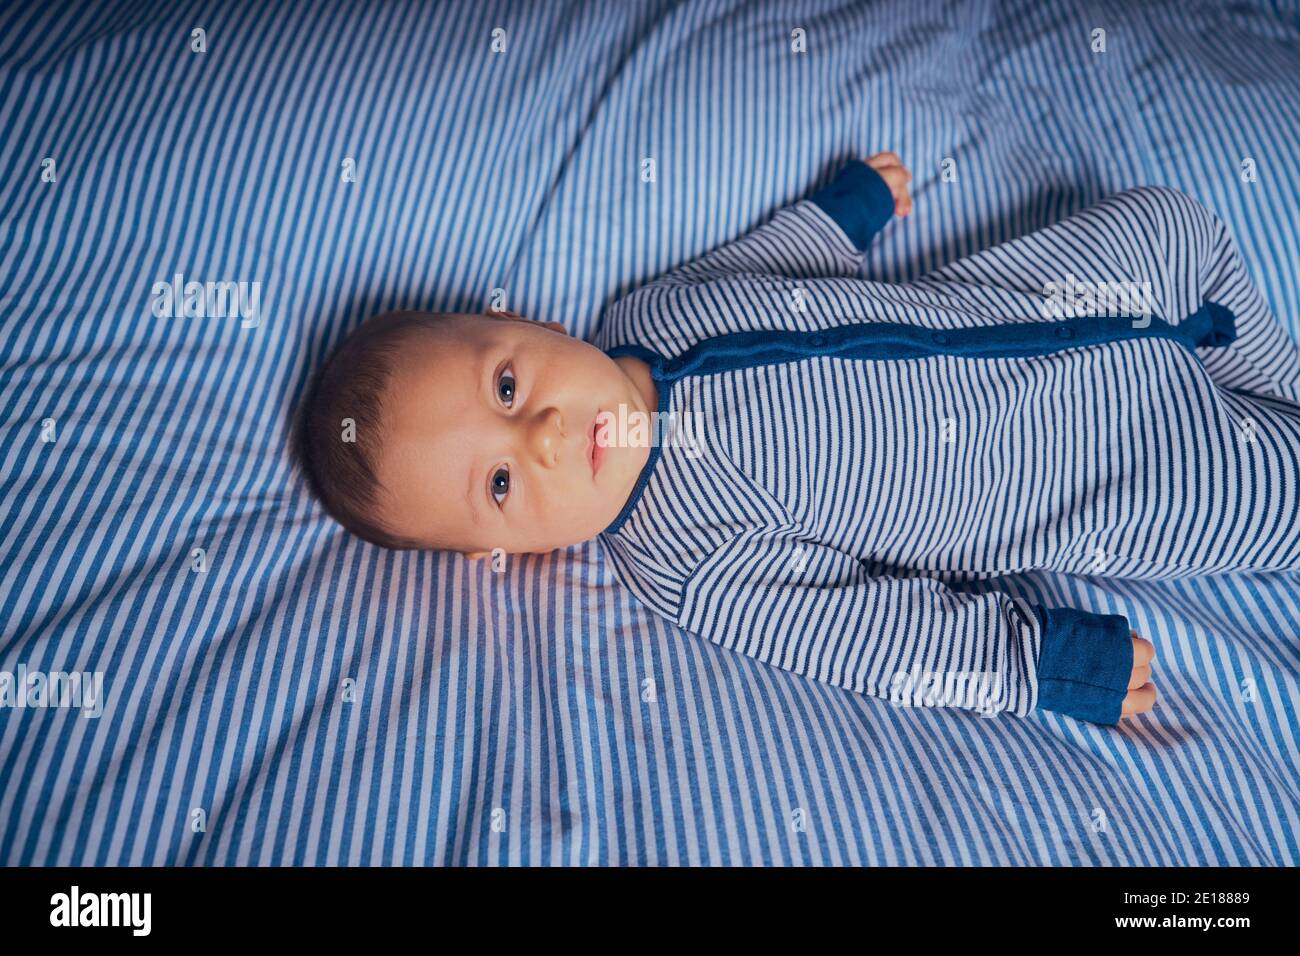 Un petit bébé dans une barboteuse rayée est couché lit assorti Banque D'Images